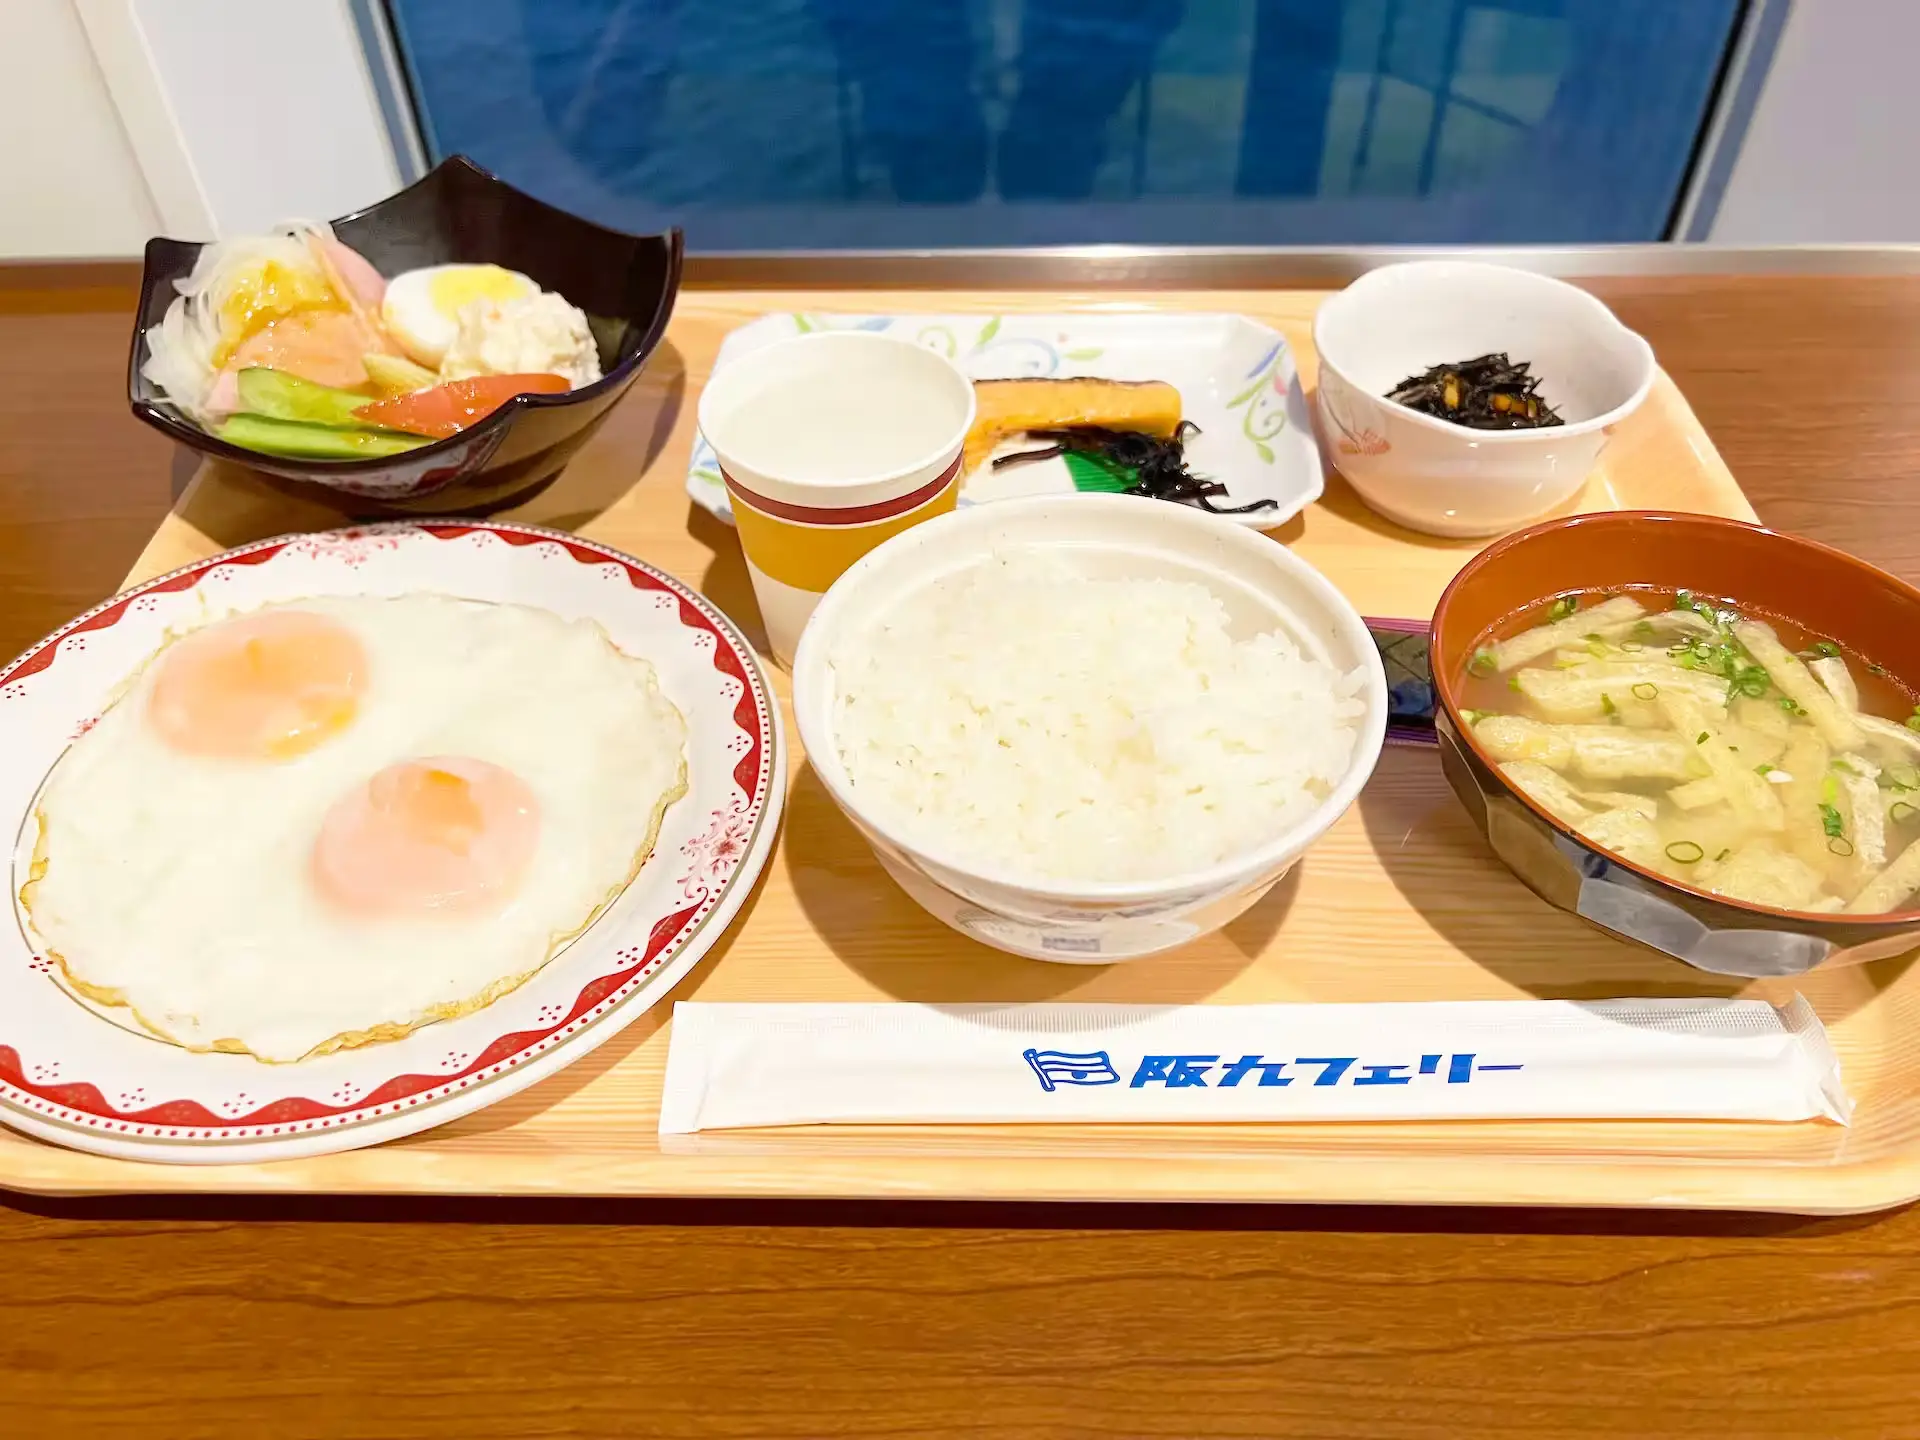 阪九渡輪大和號船上餐廳的早餐菜單